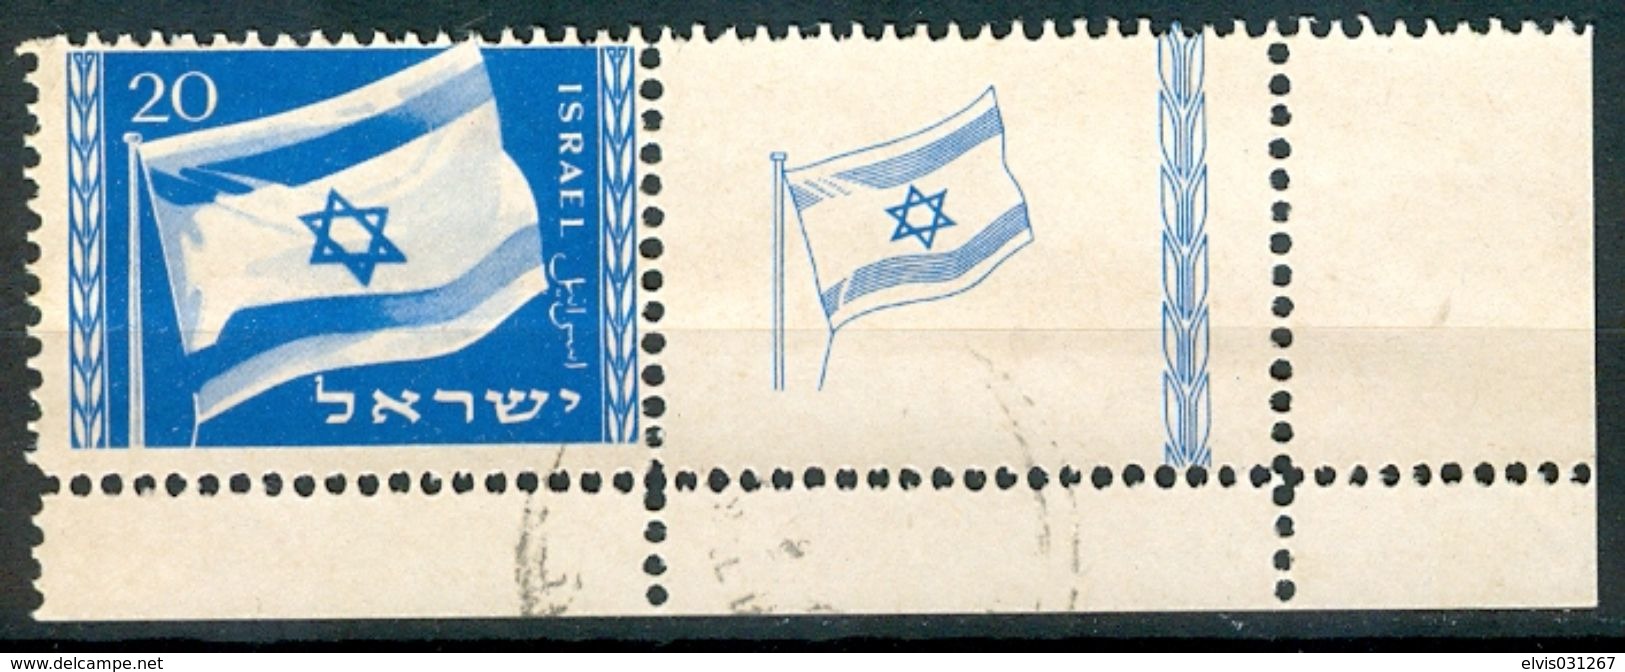 Israel - 1949, Michel/Philex No. : 16, - USED - *** - Full Tab RIGHT - Gebraucht (mit Tabs)